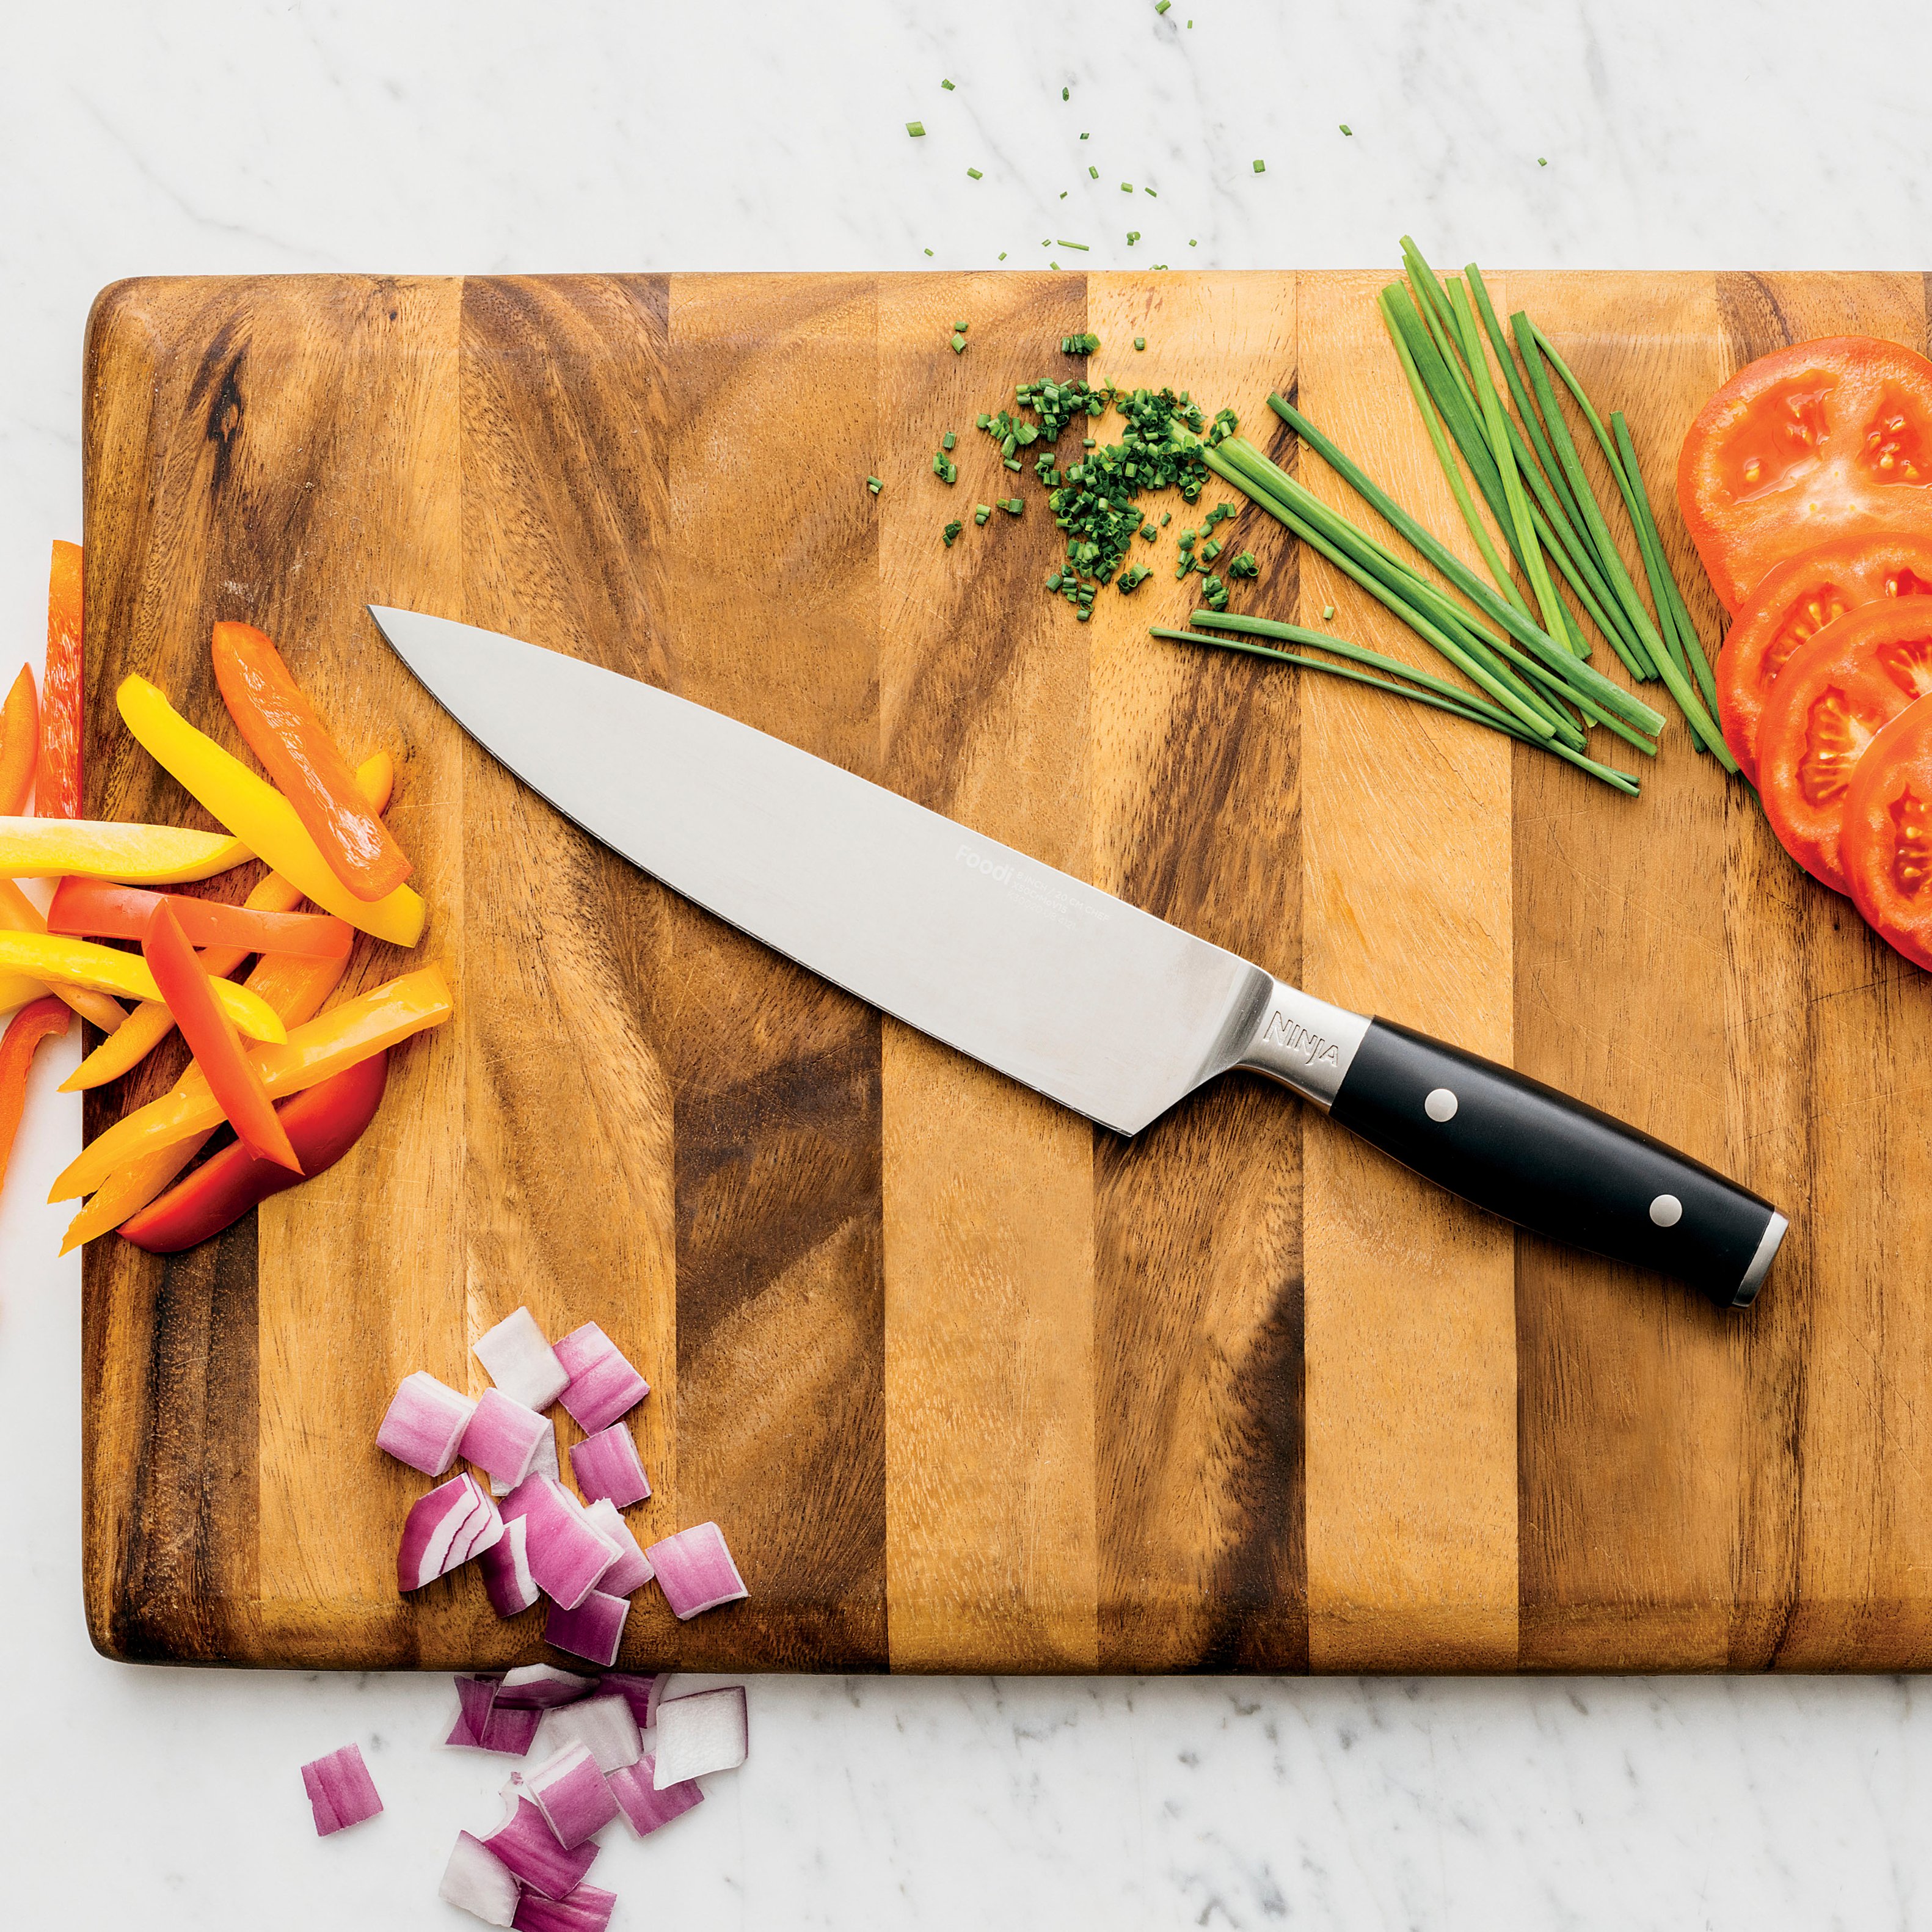  Ninja K32502 Foodi NeverDull System Chef Knife & Knife  Sharpener Set, Premium, German Stainless Steel, Black : Everything Else